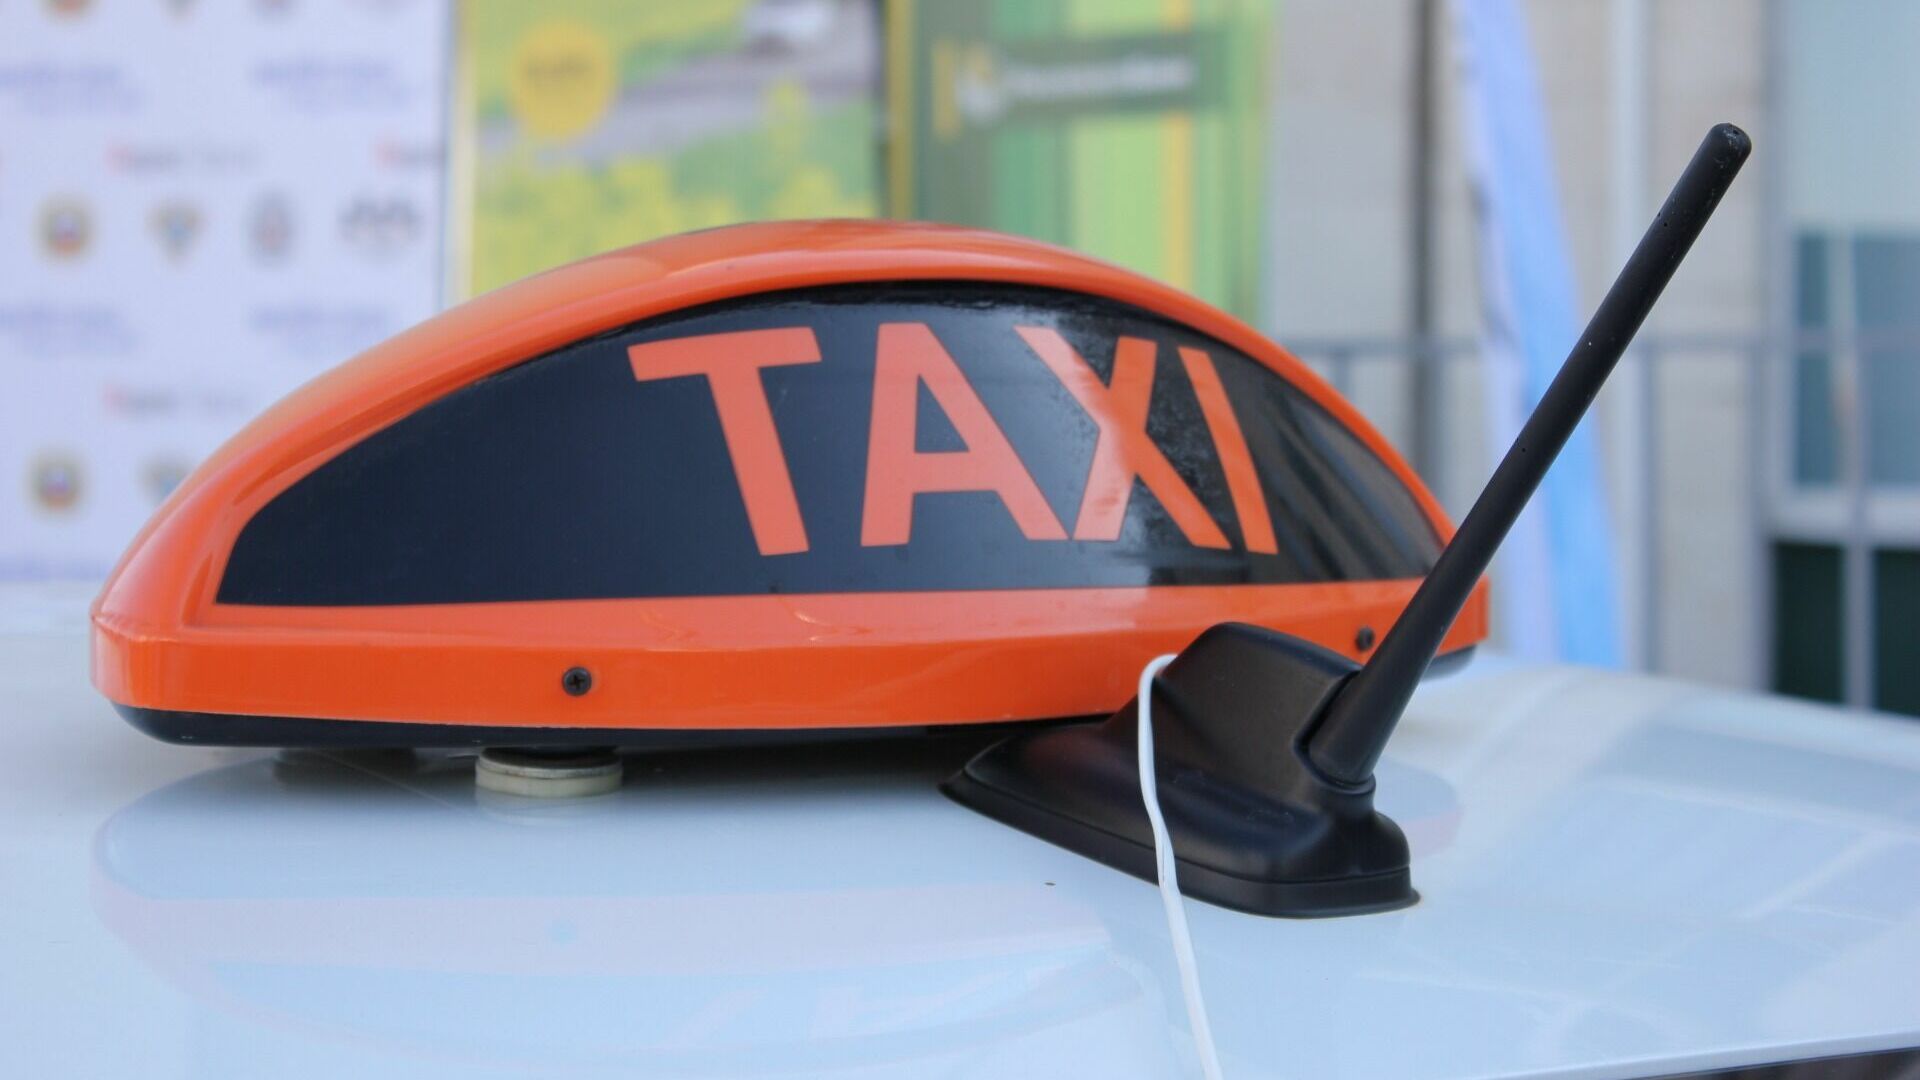 Работа в такси может быть смертельно опасной